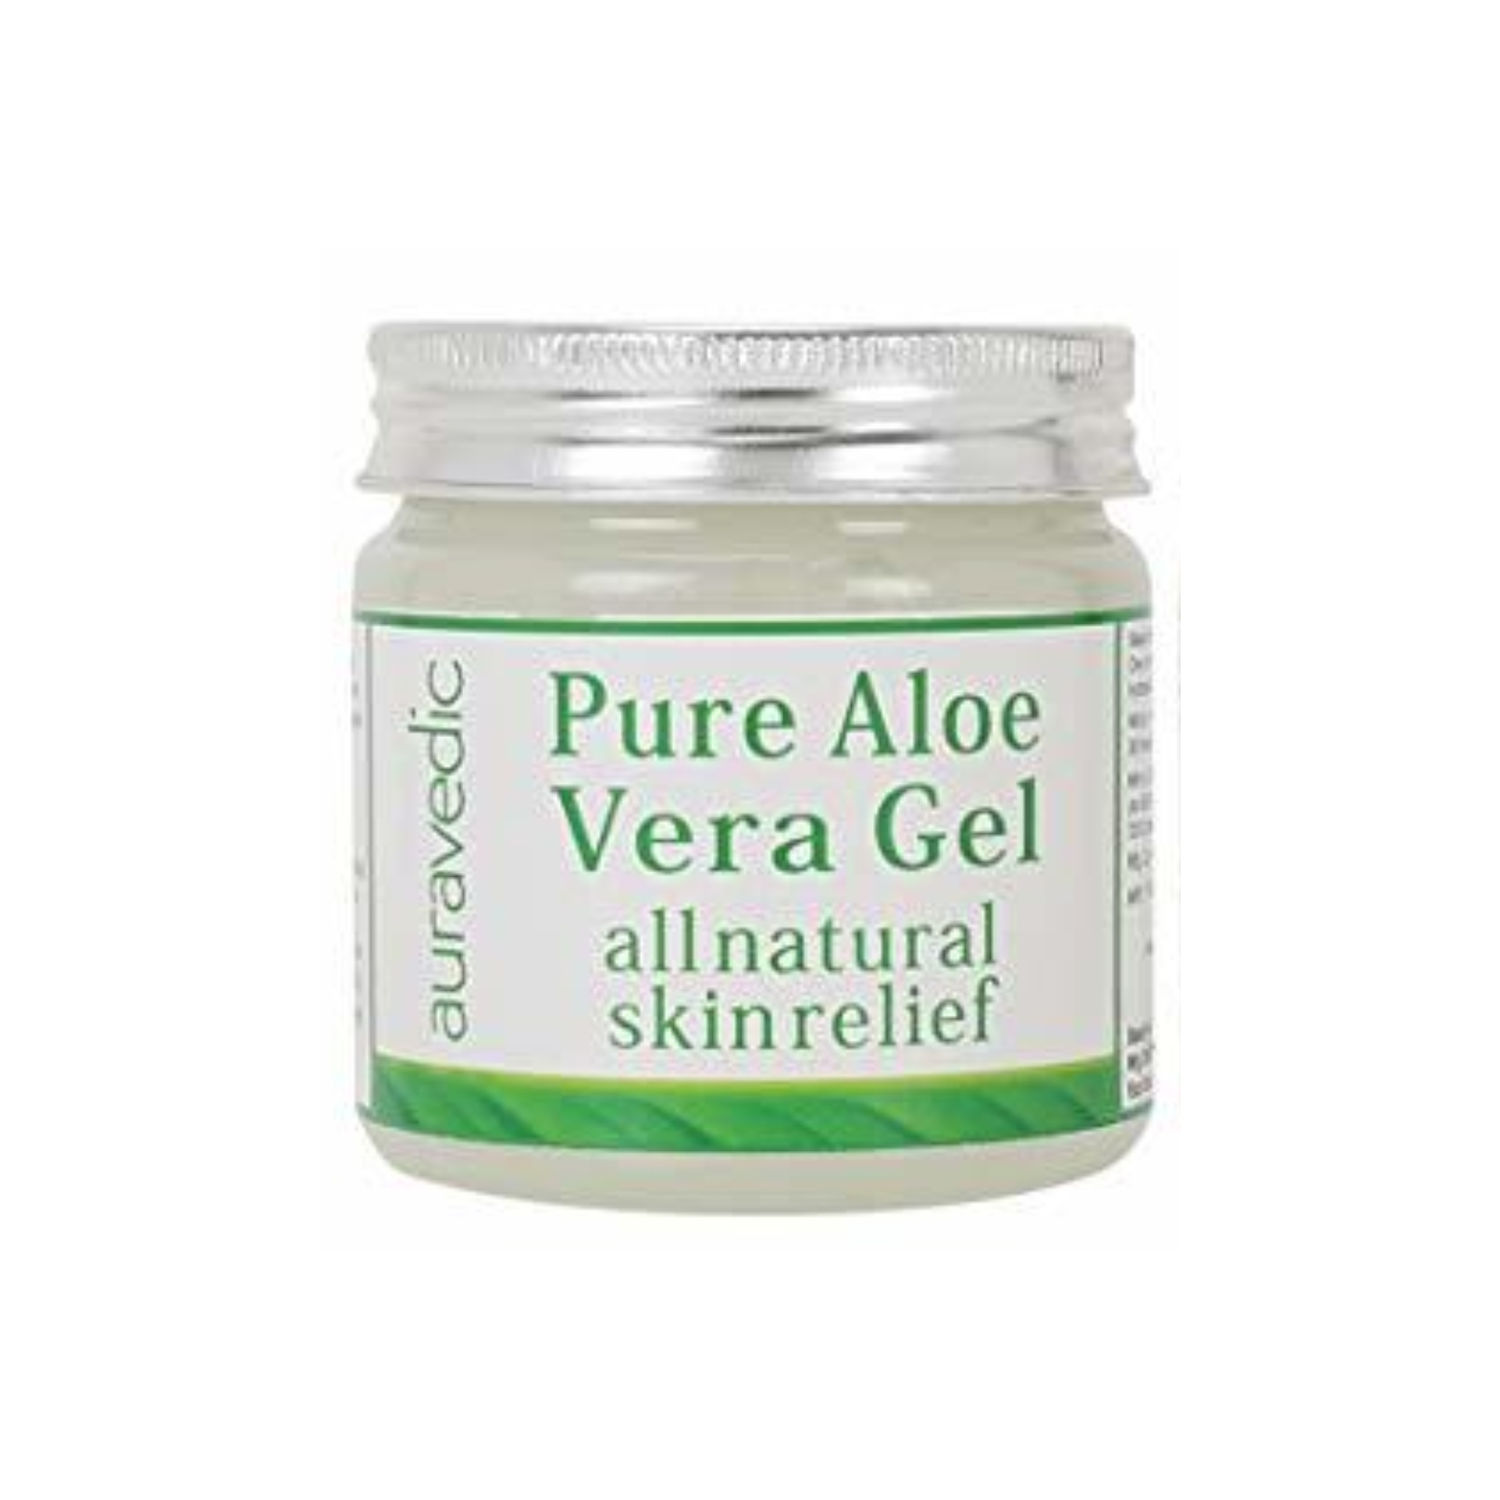 Buy Auravedic Pure Aloe Vera Gel 200 G Online Purplle 6384